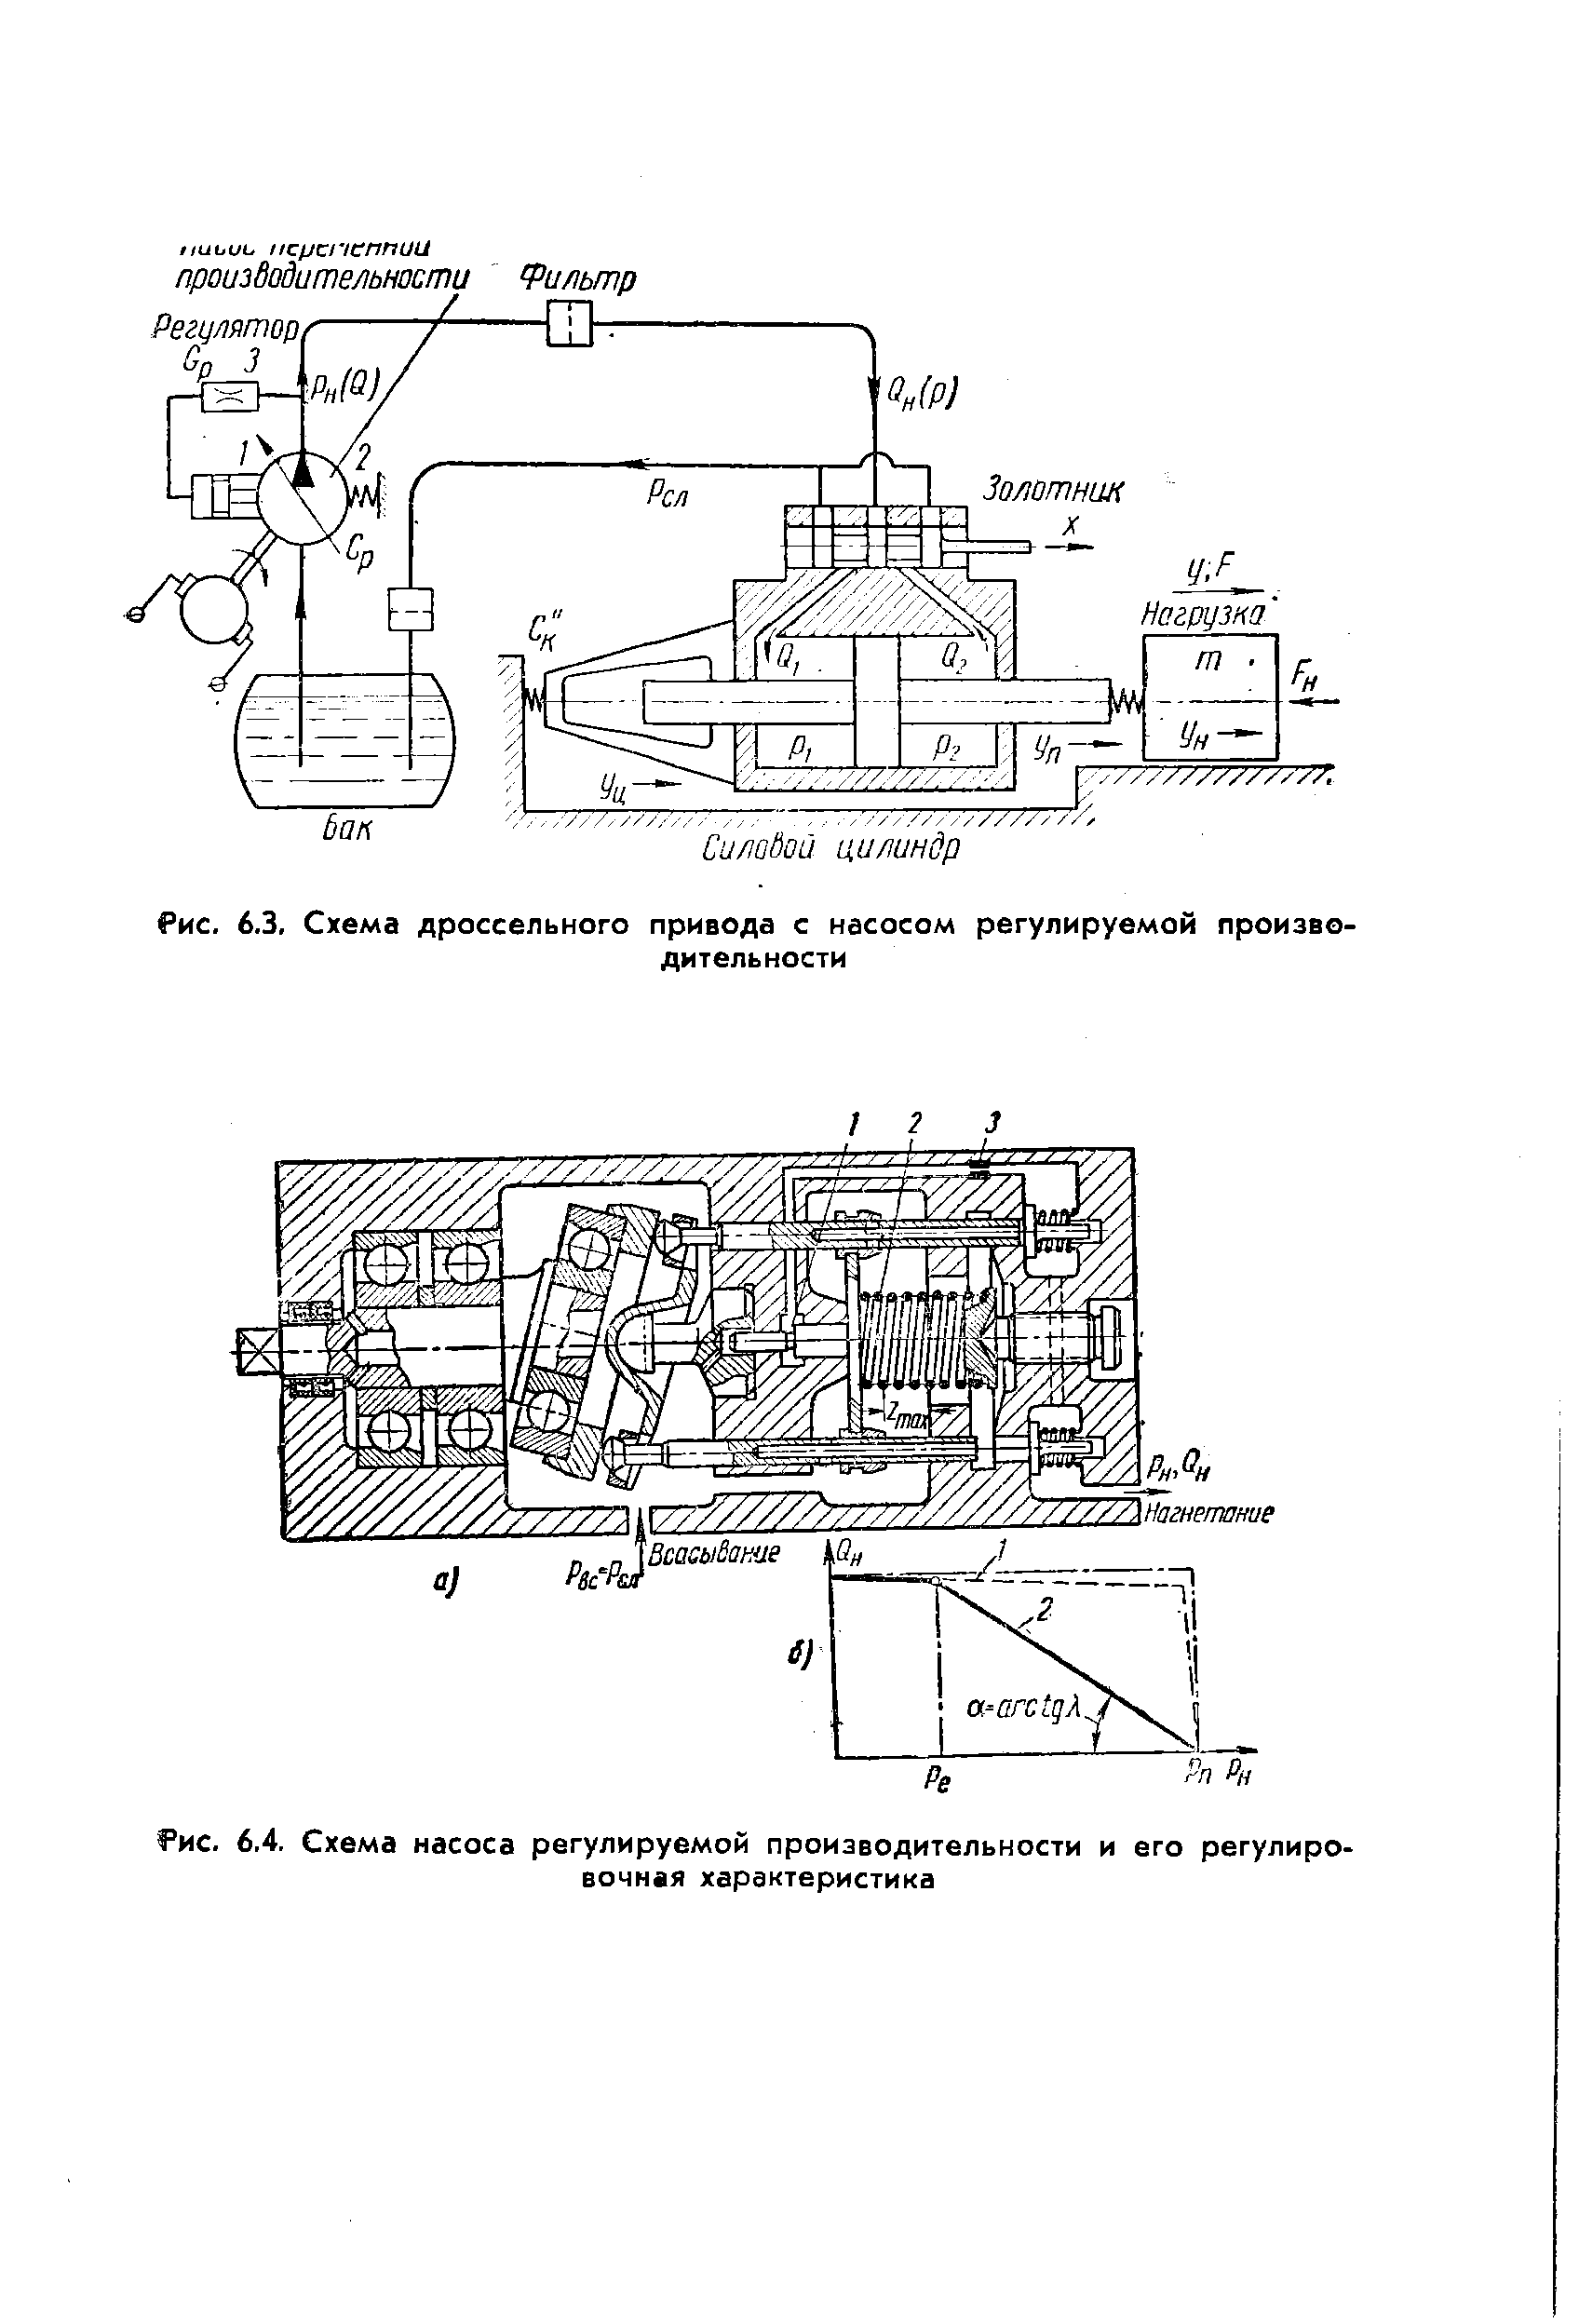 Рис. 6.3, Схема дроссельного привода с насосом регулируемой производительности
